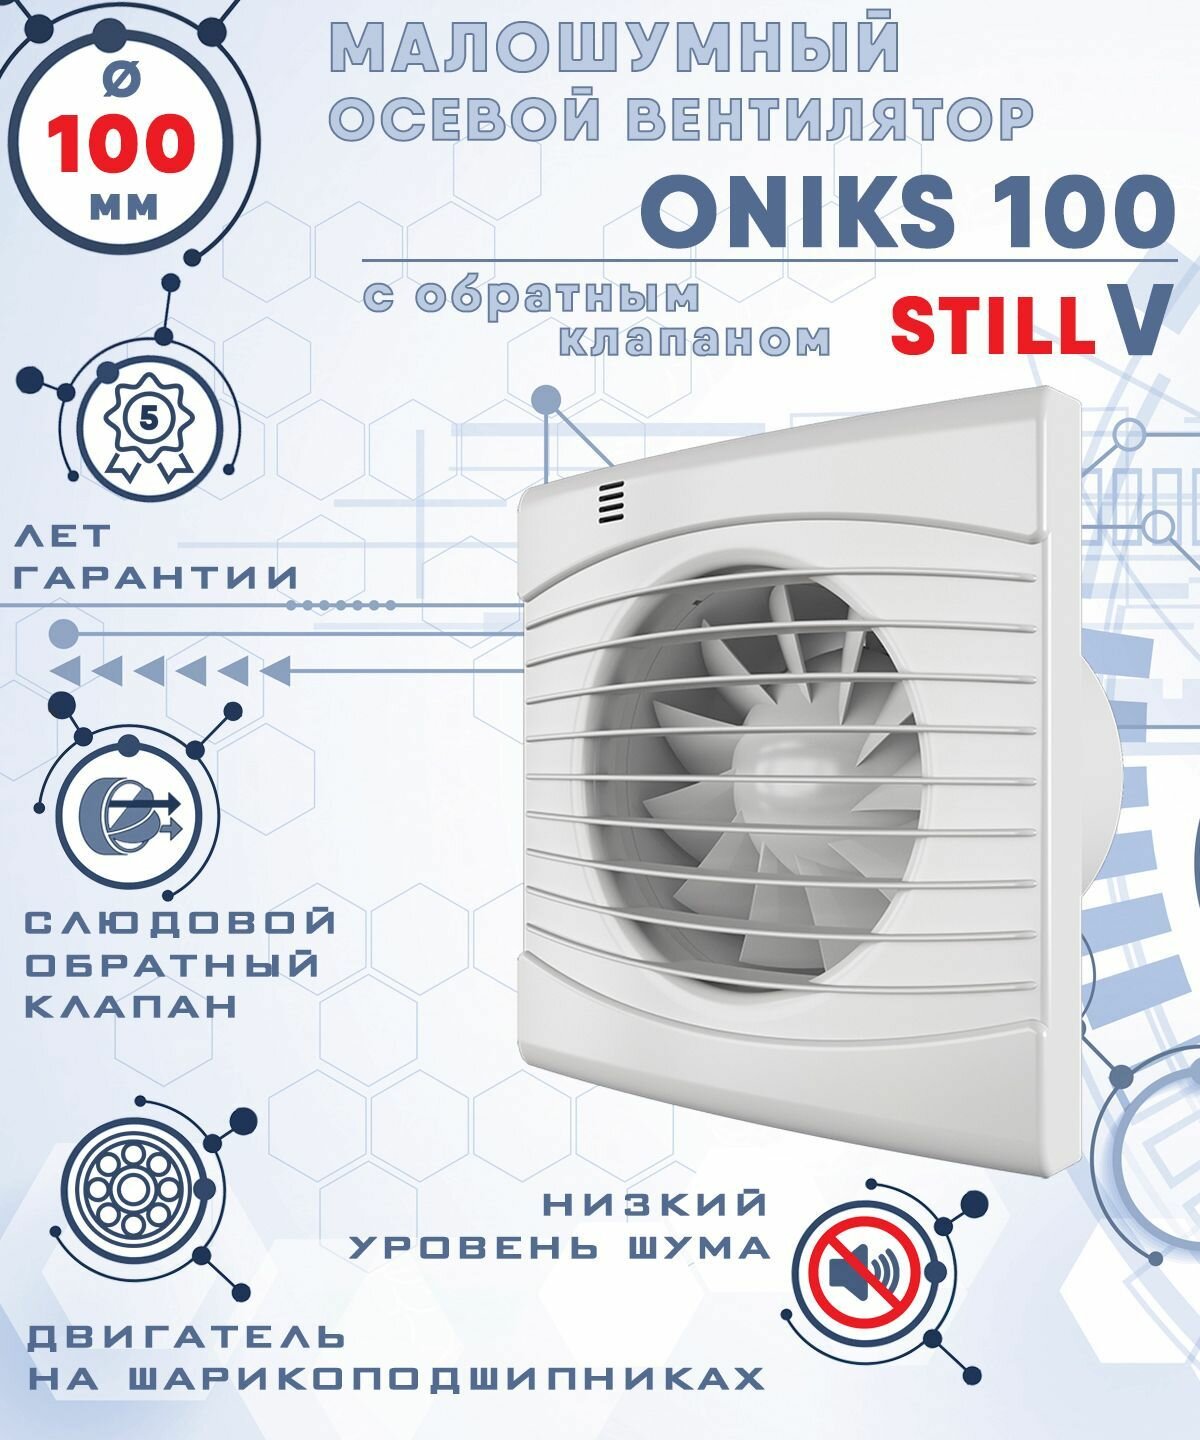 ONIKS 100 STILL V вентилятор вытяжной малошумный 25 Дб энергоэффективный 8 Вт на шарикоподшипниках с обратным клапаном диаметр 100 мм ZERNBERG